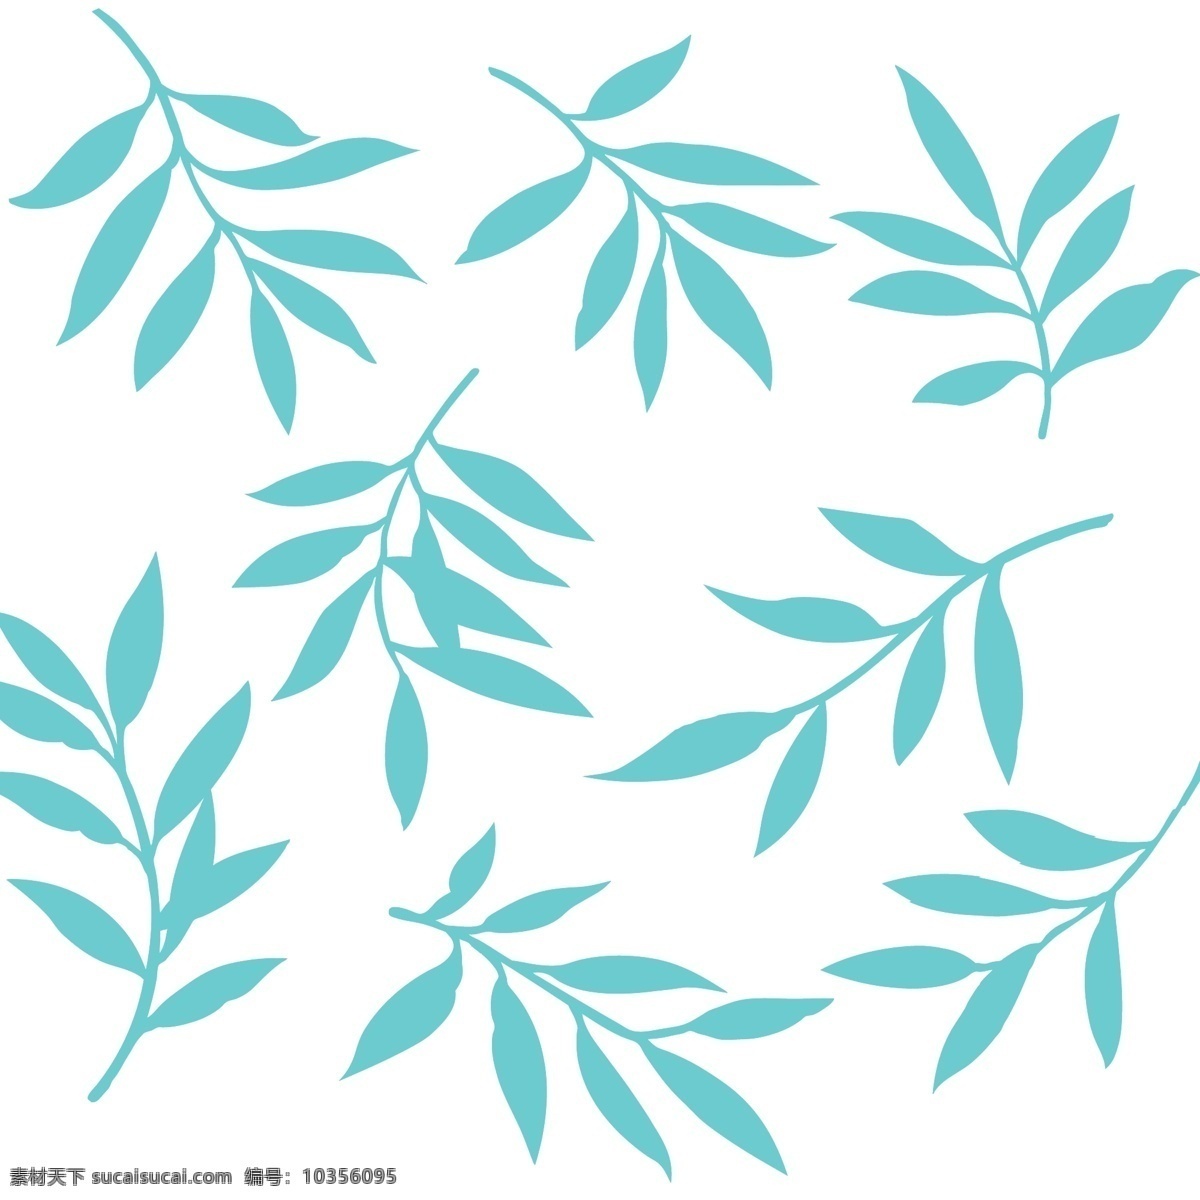 叶子 花纹 橄榄叶 蓝叶子 花纹花边 底纹边框 矢量